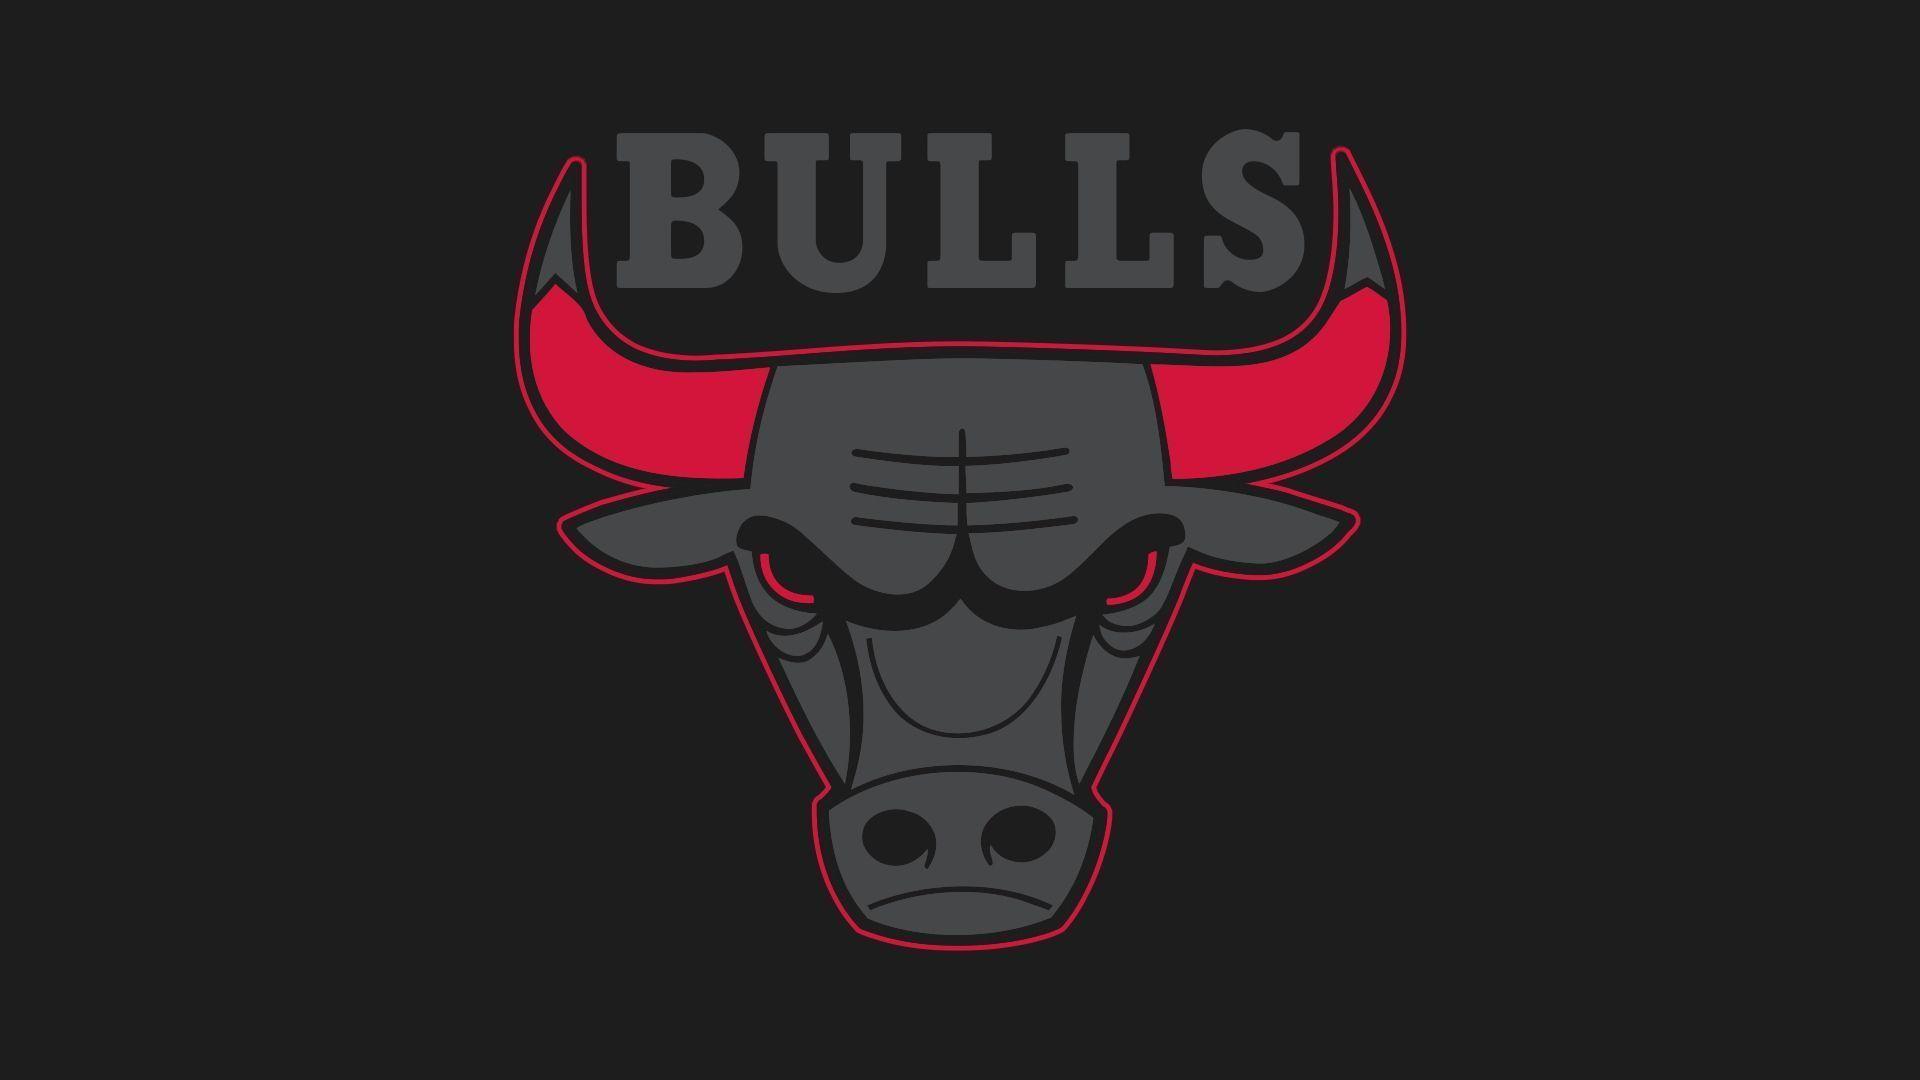 dangerous bull wallpaper